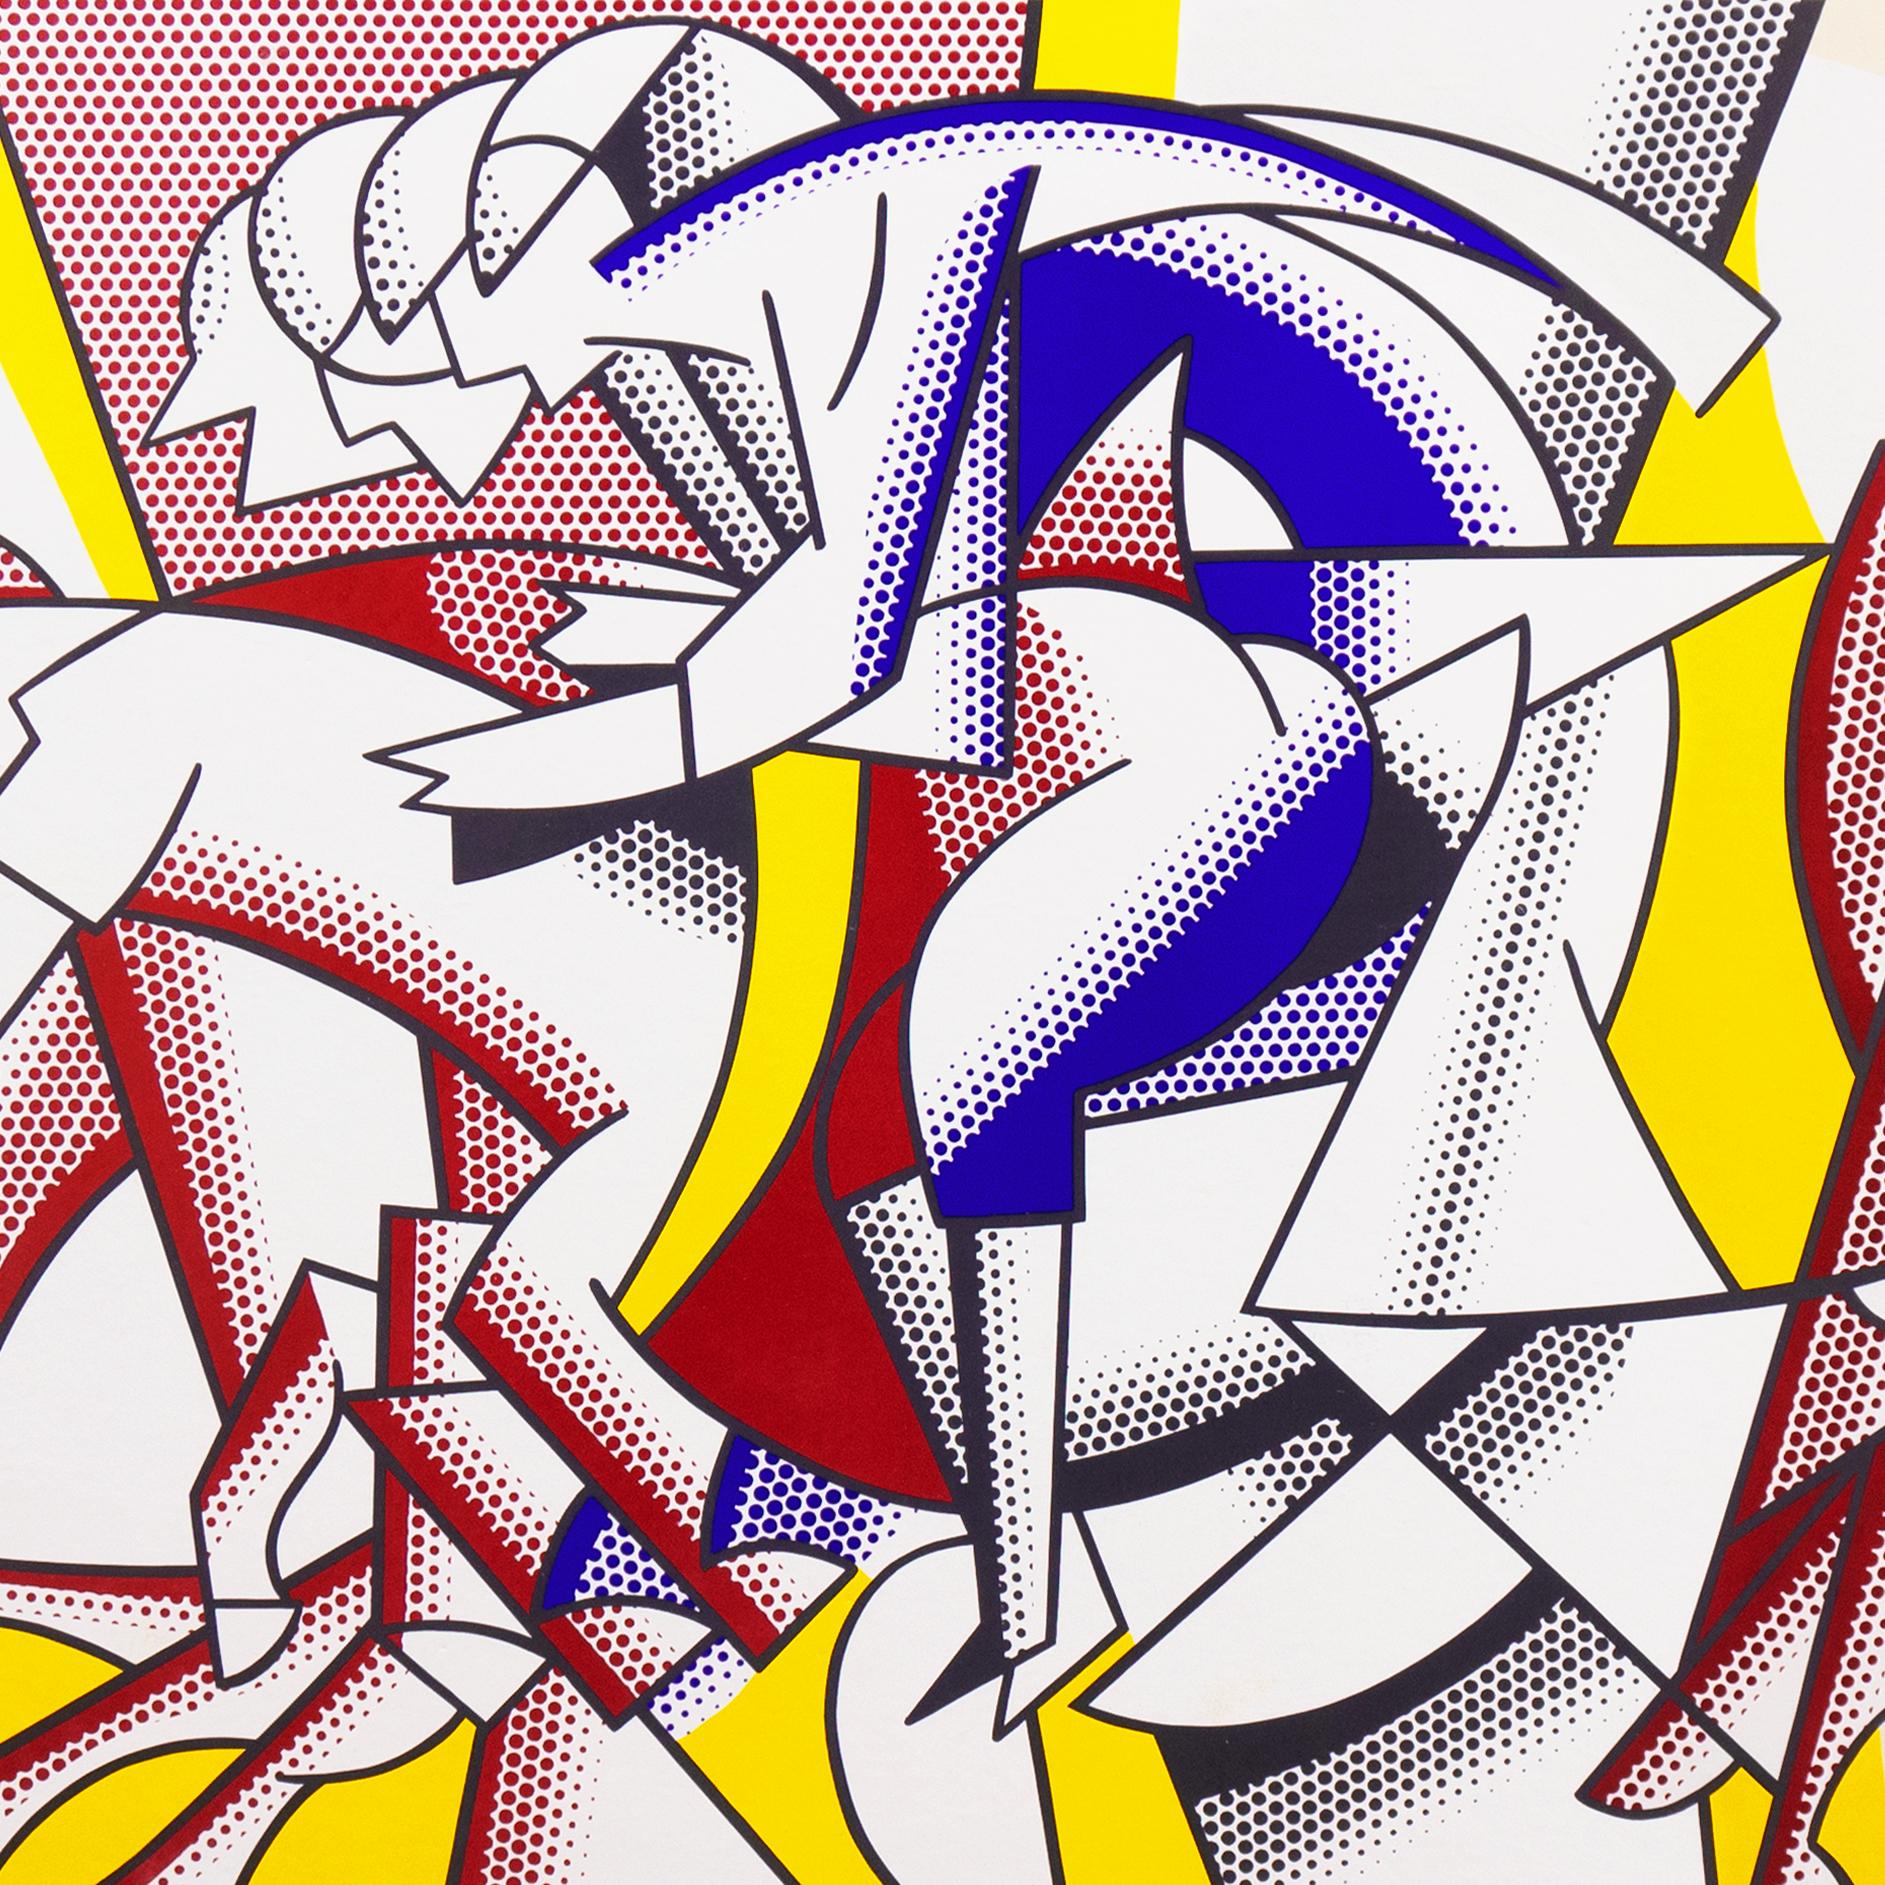 Vintage, 1975, affiche d'exposition de la Leo Castelli New York Gallery ; signée, en bas à droite, au feutre, 'R. Lichtenstein' pour Roy Lichtenstein (américain, 1923-1997).

Roy Lichtenstein a d'abord étudié avec Reginald Marsh à l'Art Students